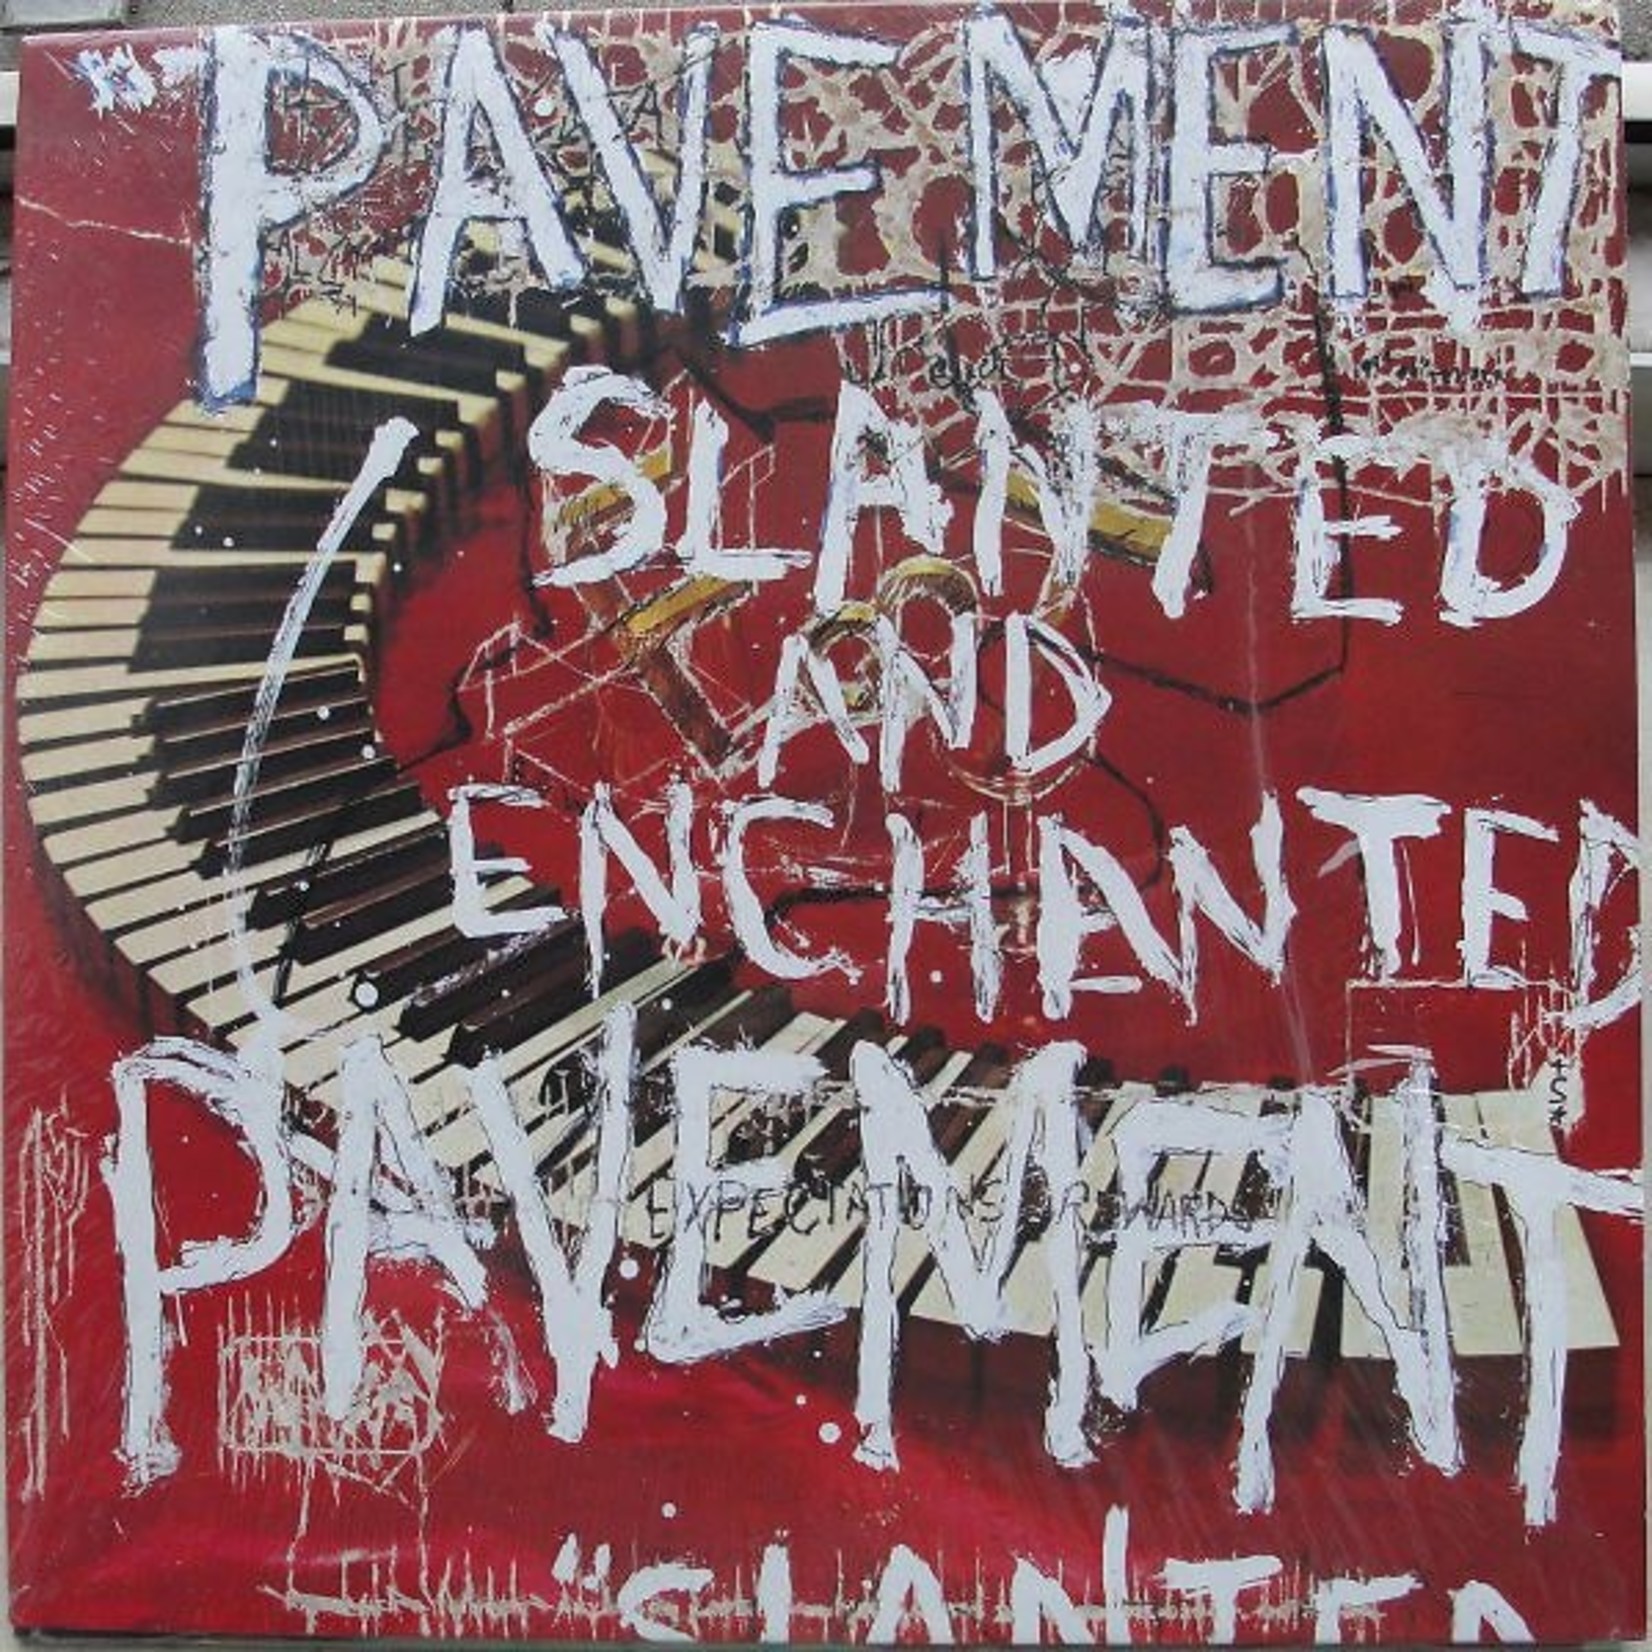 PAVEMENT - slanted and enchanted Lp (LTD COLOR)